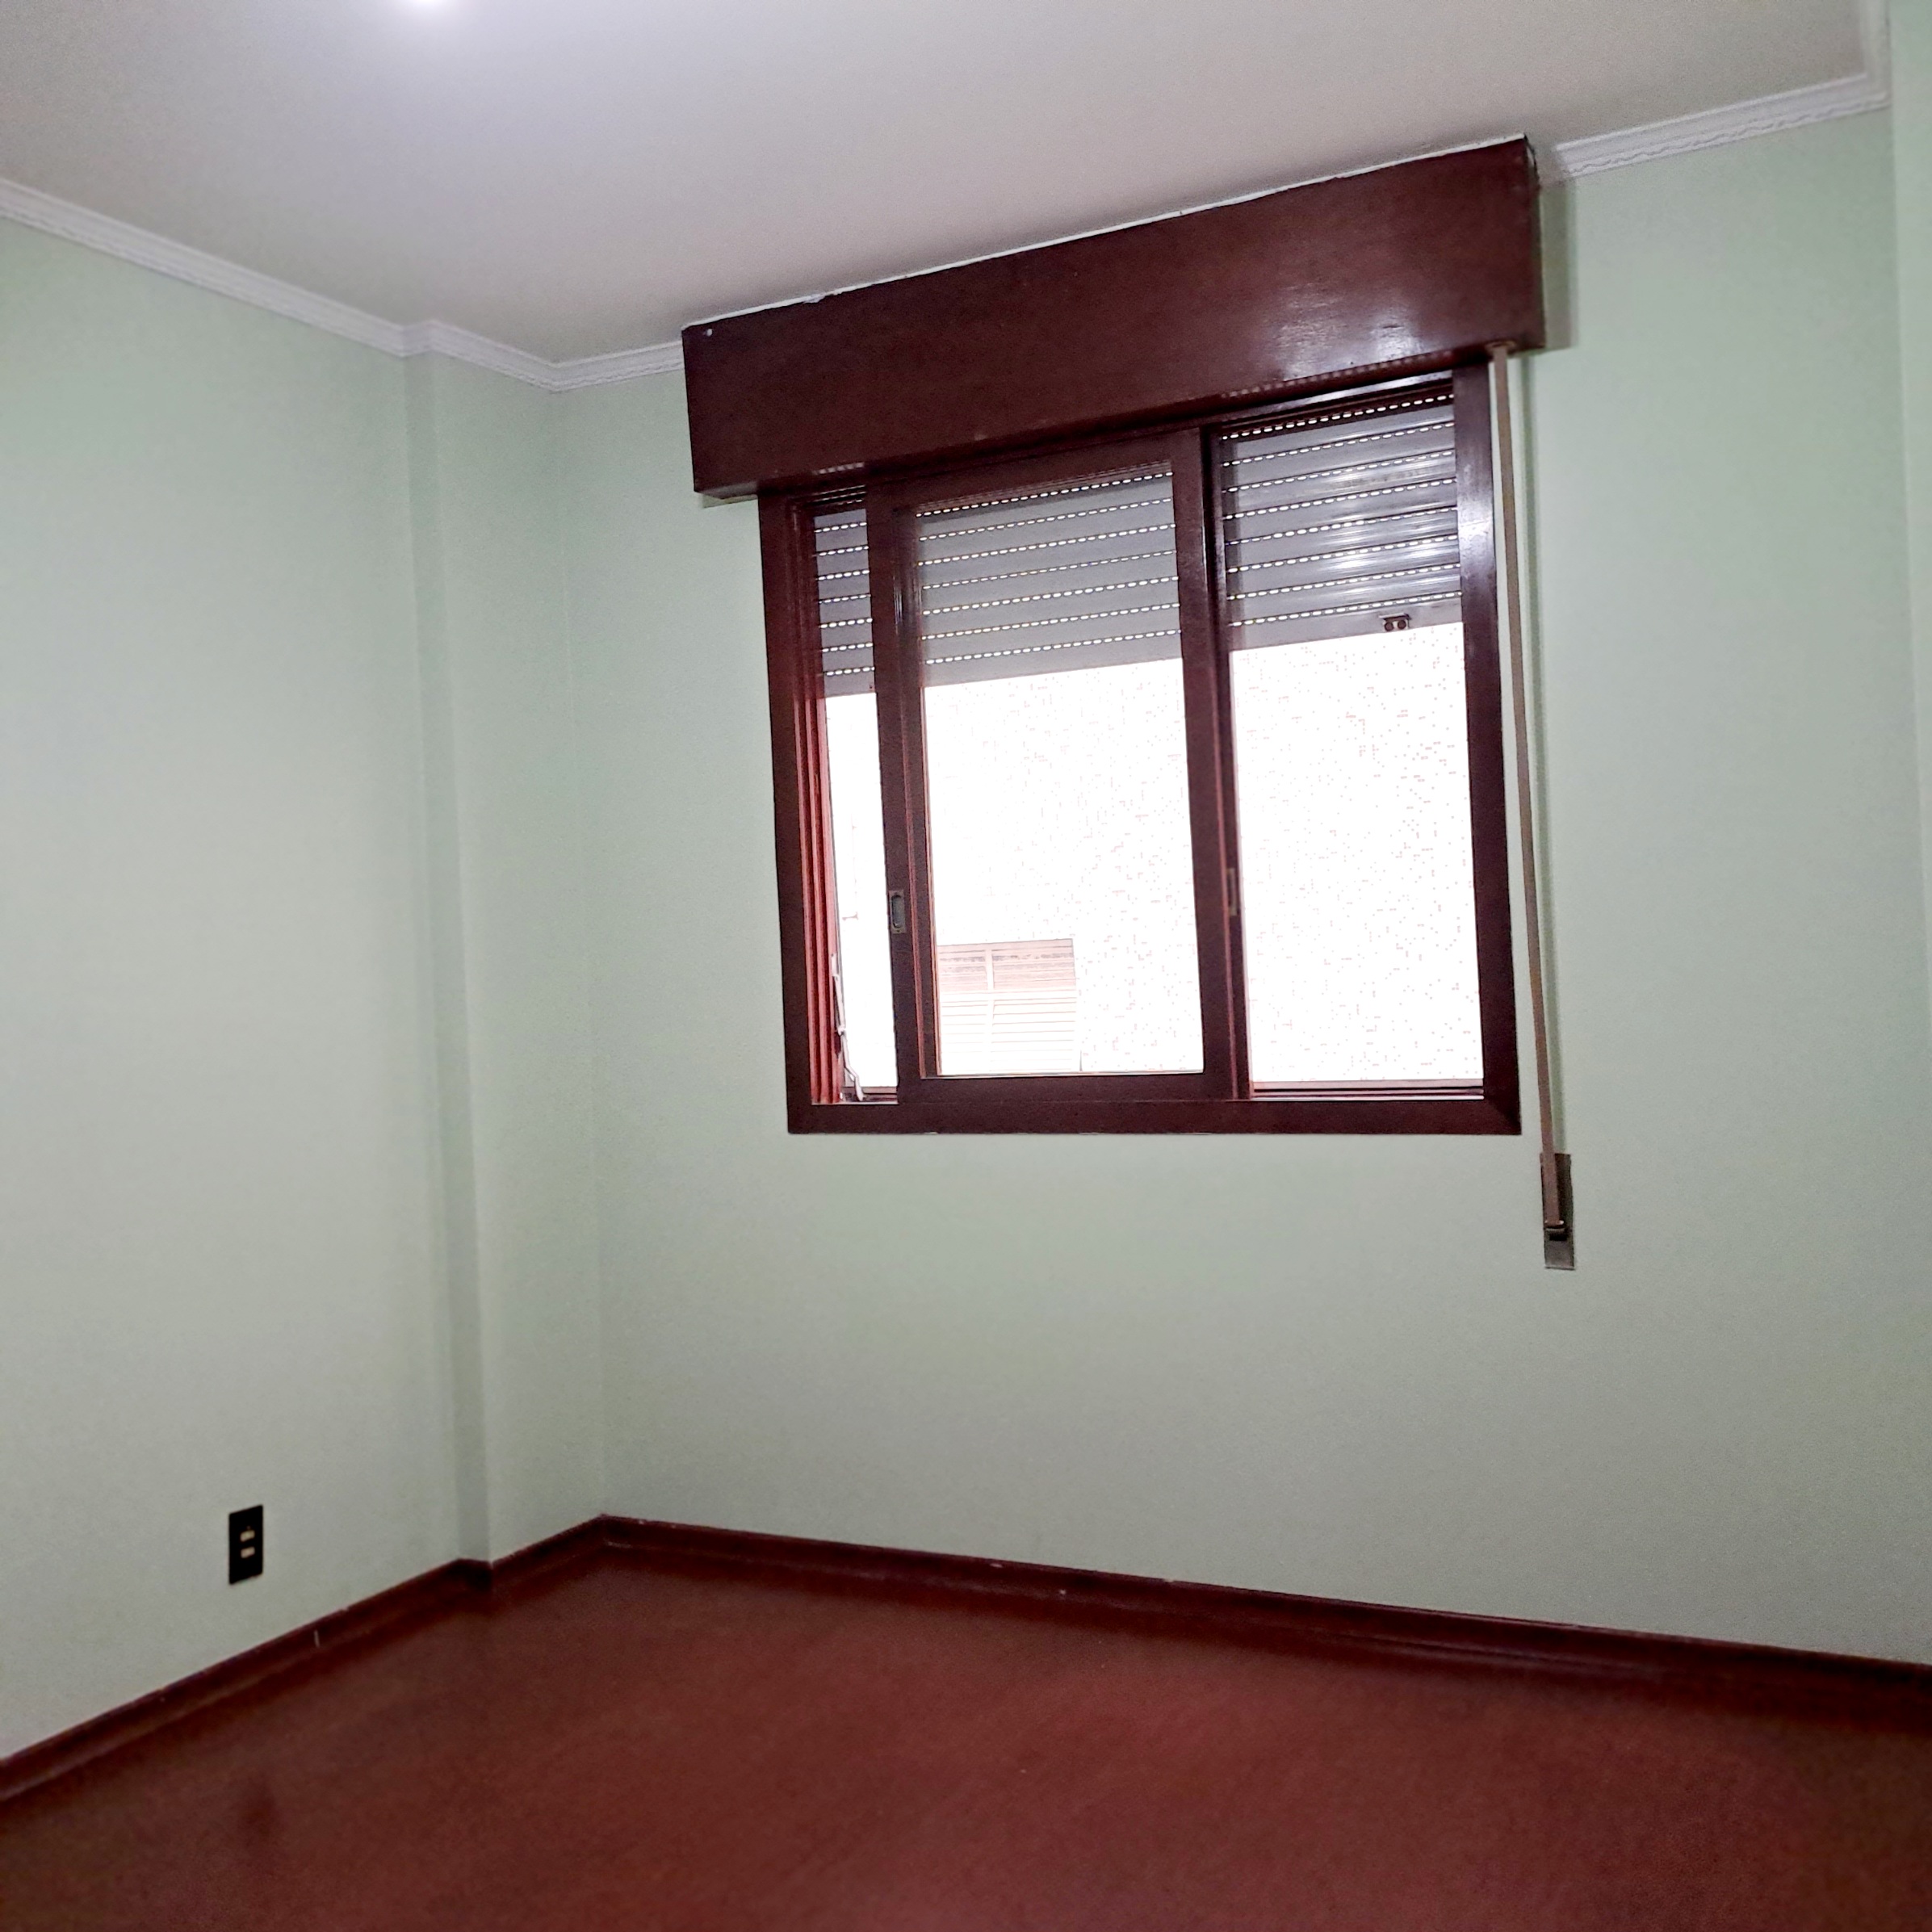 Apartamento com dois dormitórios Boqueirão - Santos - SP